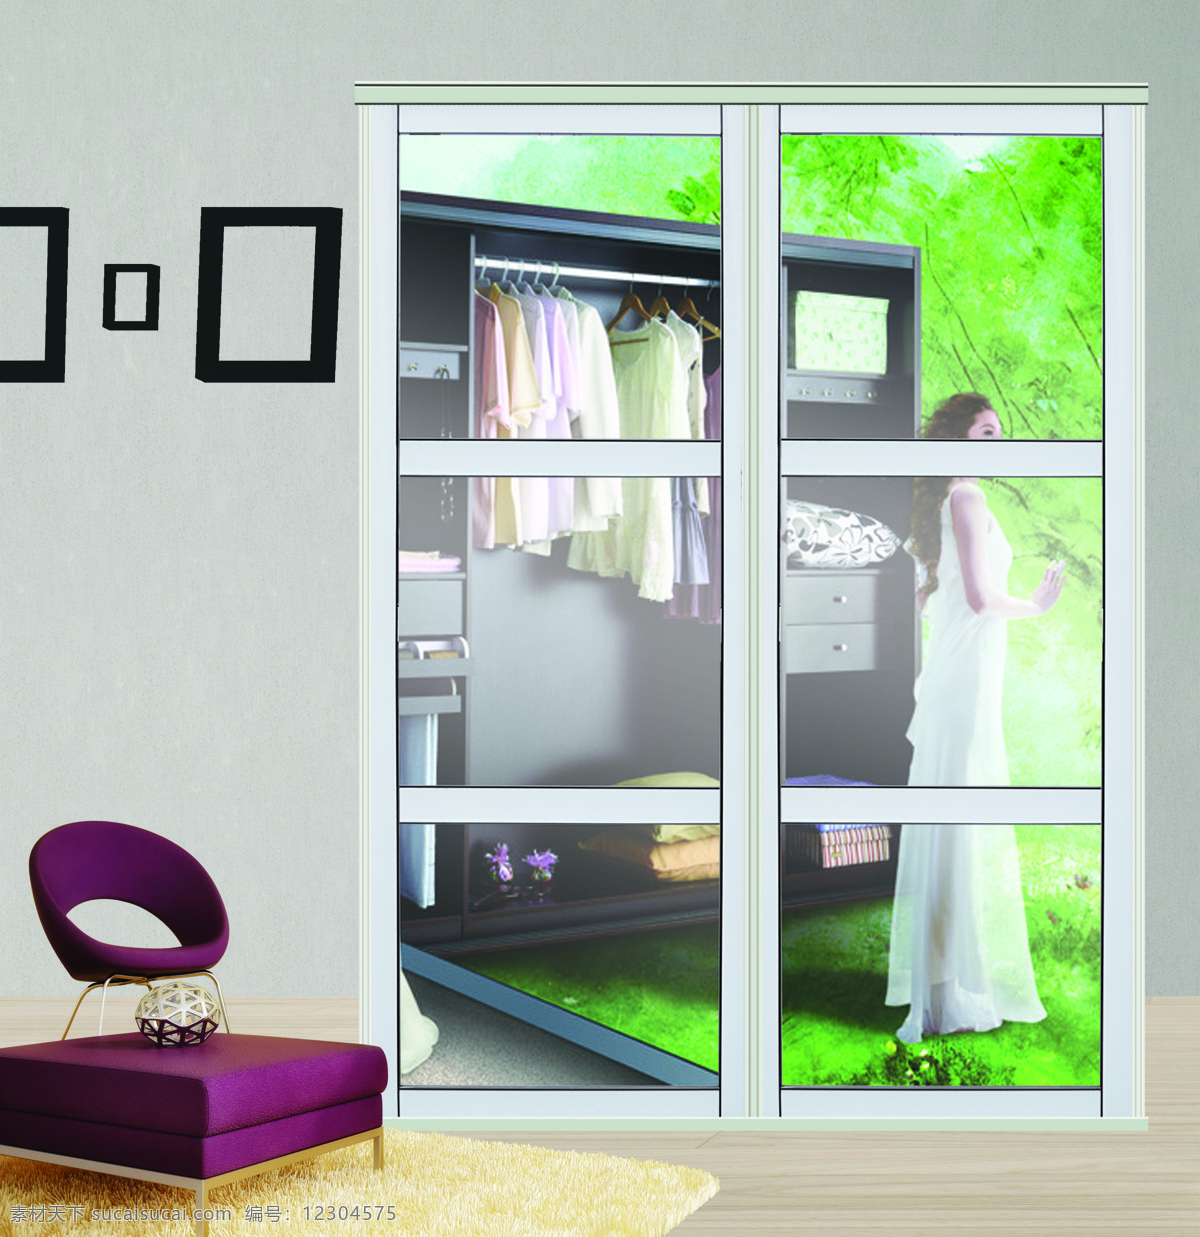 玻璃门 3d设计 隔断门 画册图片 平面设计 效果图 衣柜 设计素材 模板下载 家居装饰素材